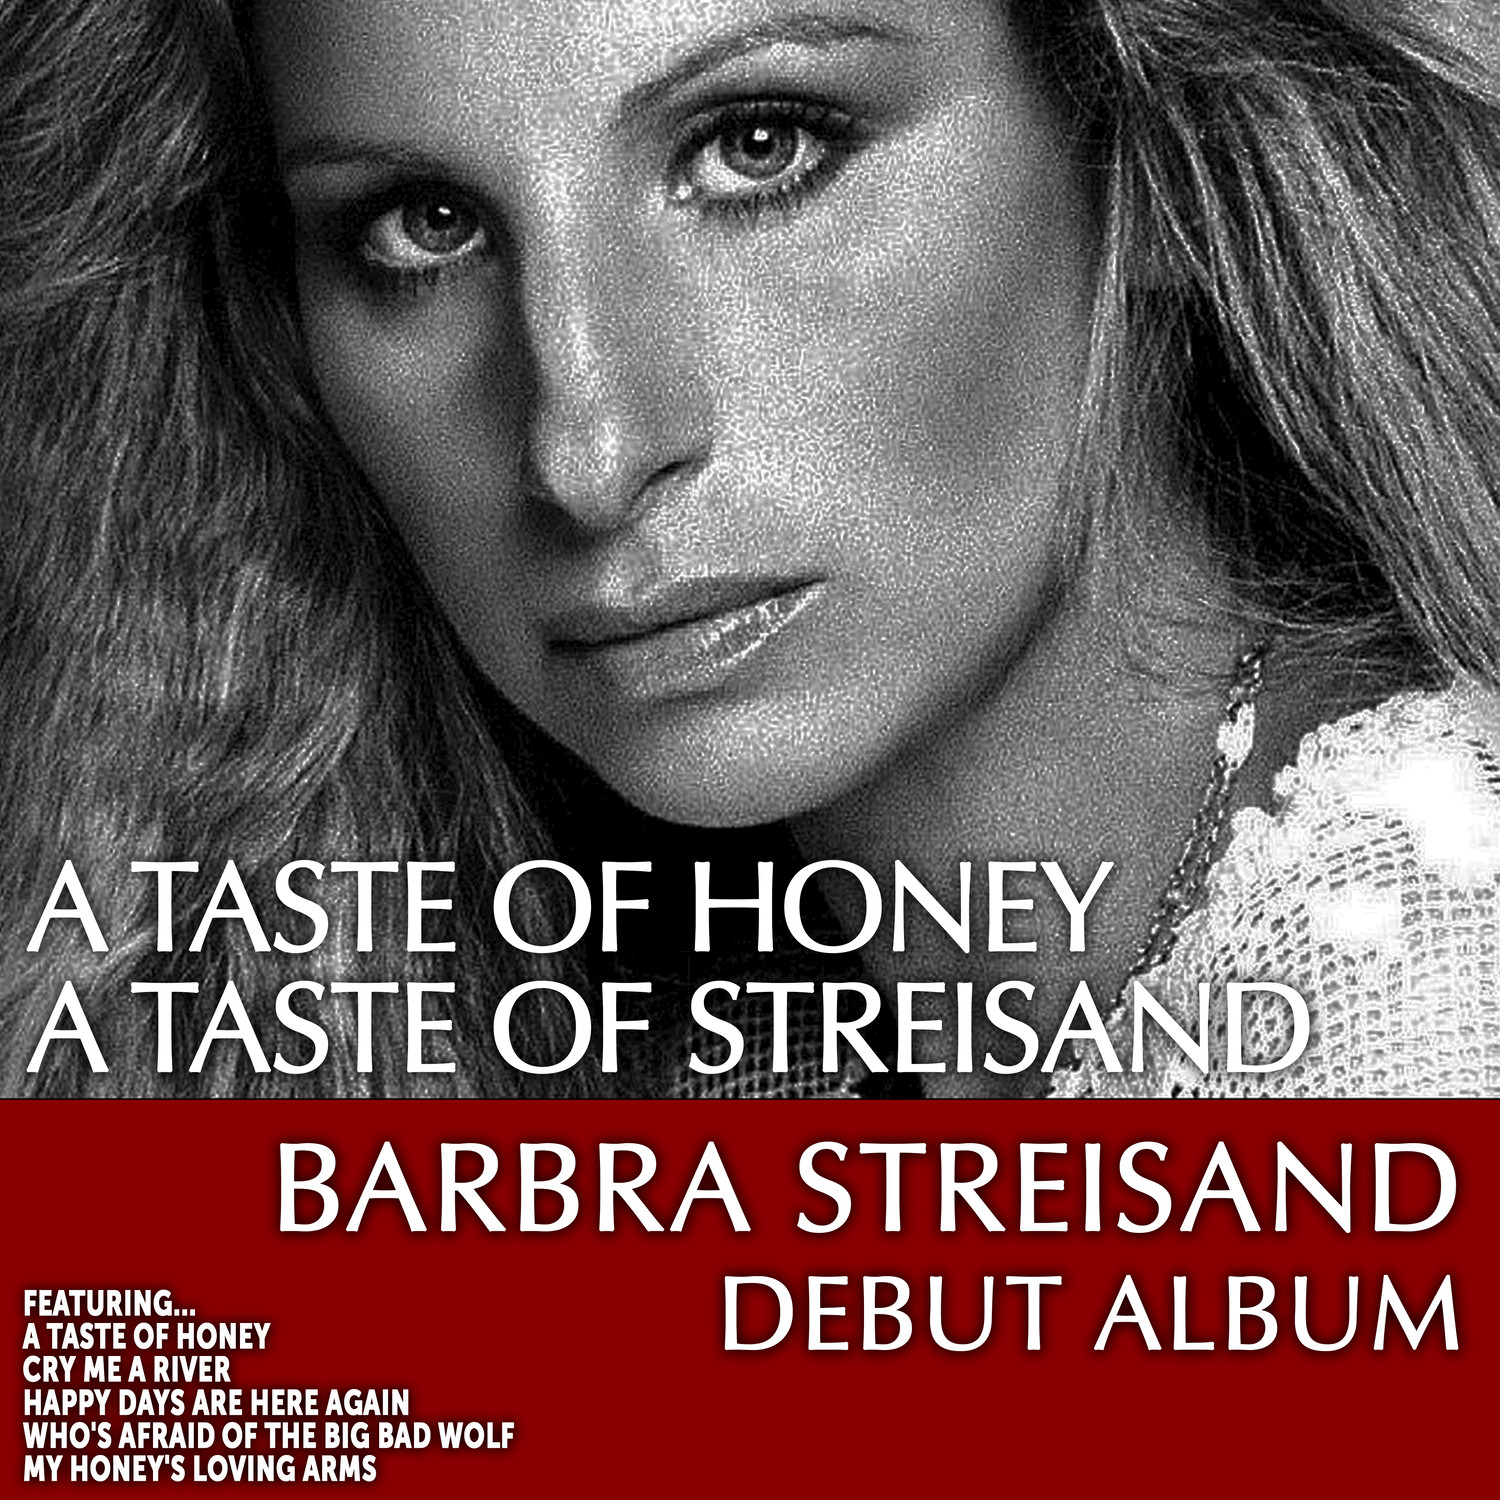 A Taste of Honey a Taste of Streisand: Barbra Streisand Debut Album